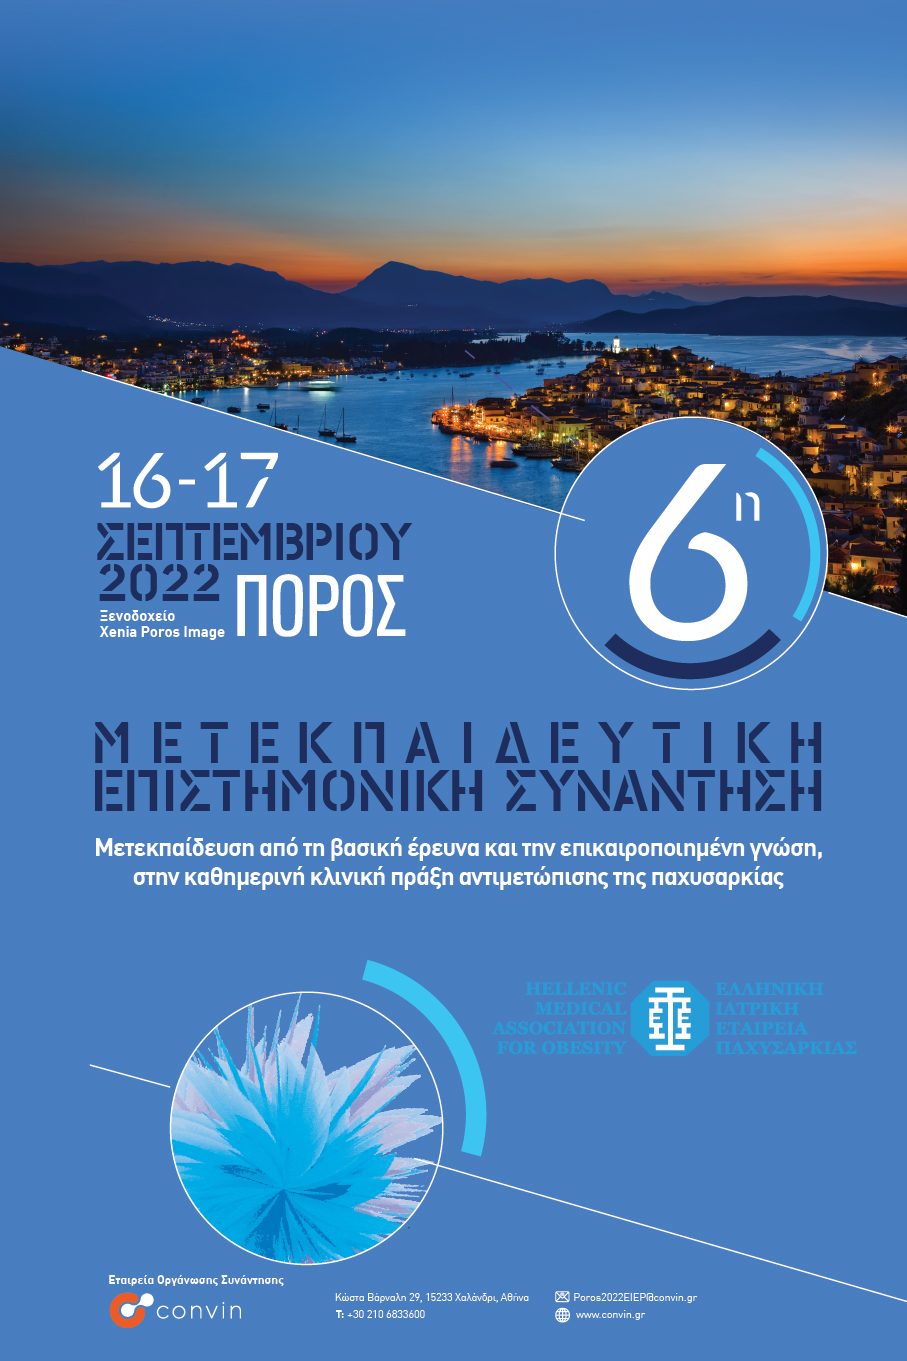 6η Μετεκπαιδευτική Επιστημονική Συνάντηση Ελληνικής Ιατρικής Εταιρείας Παχυσαρκίας - (Πόρος,16-17 Σεπτεμβρίου 2022)